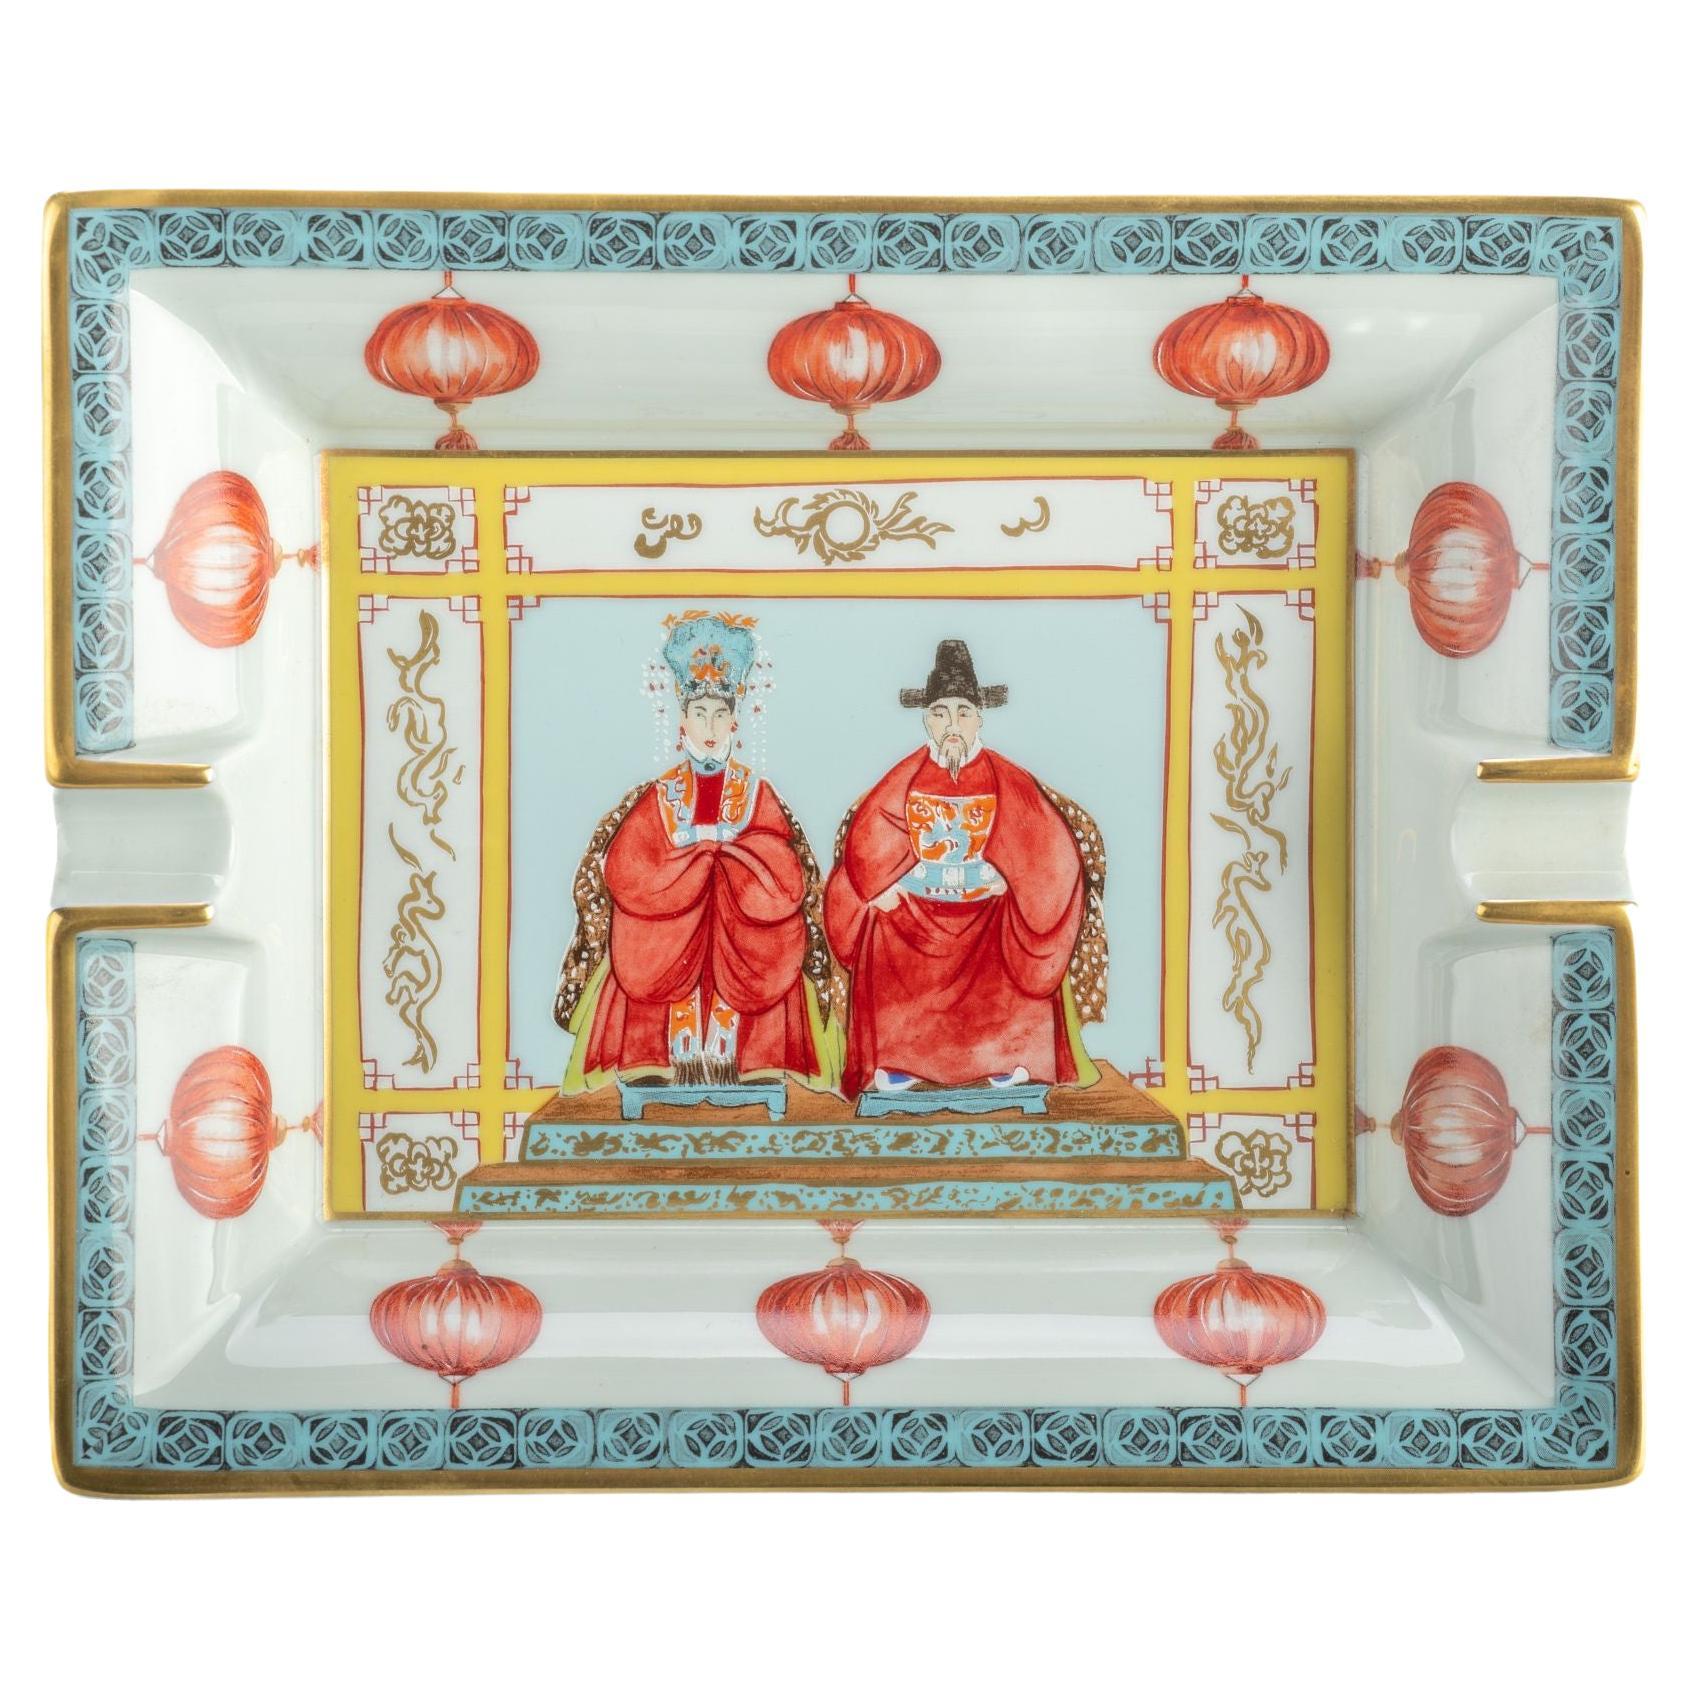 Aschenbecher aus Porzellan mit chinesischen Figuren von Hermes